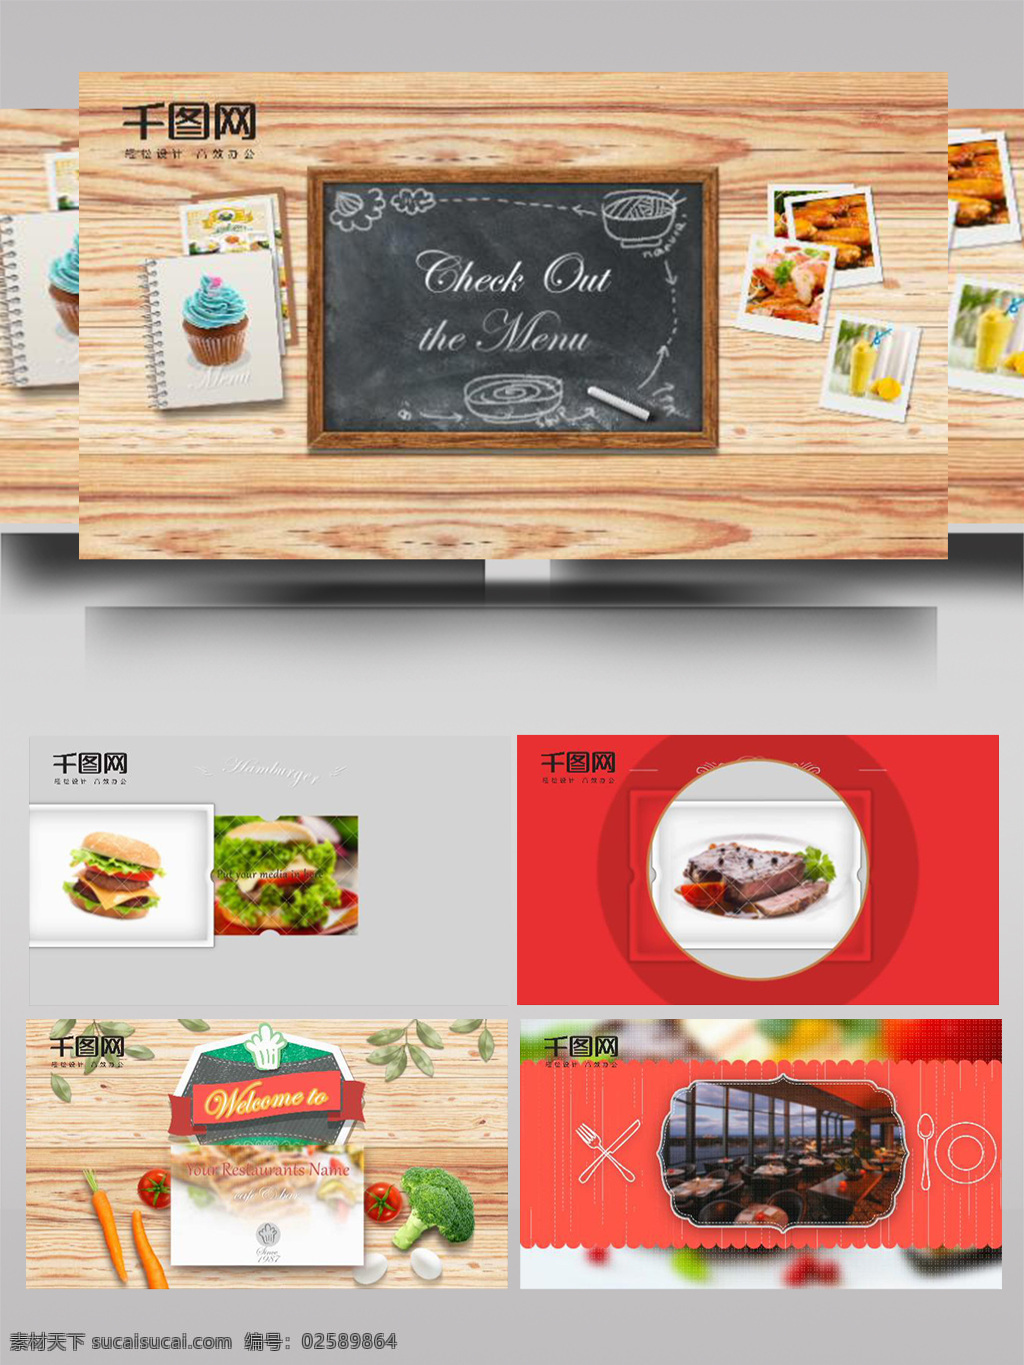 色彩 纯净 温馨 餐厅 菜单 ae 模板 餐饮 服务 科技 数字 业务 企业展示 住房 城市发展 互联网 动作 幻灯片 技术 数据 显示 吃饭 食物